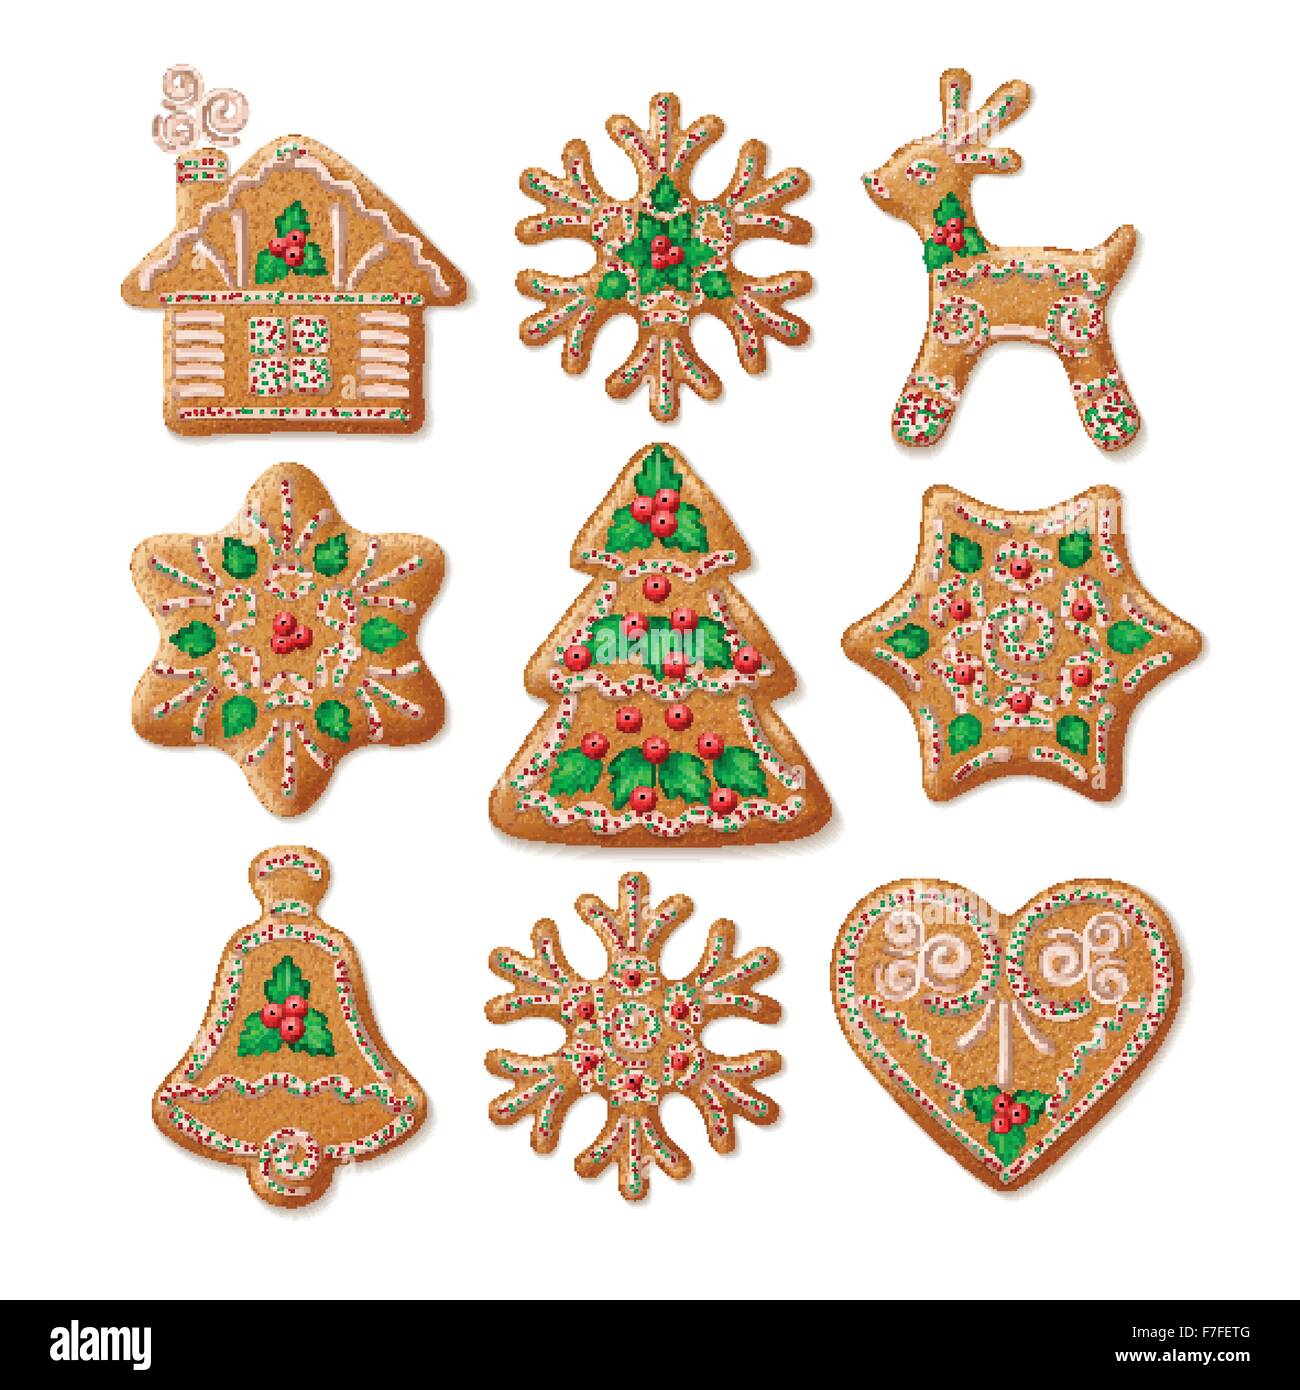 Reich verzierte realistisch eingestellten traditionellen Weihnachten Lebkuchen. Vektor-illustration Stock Vektor